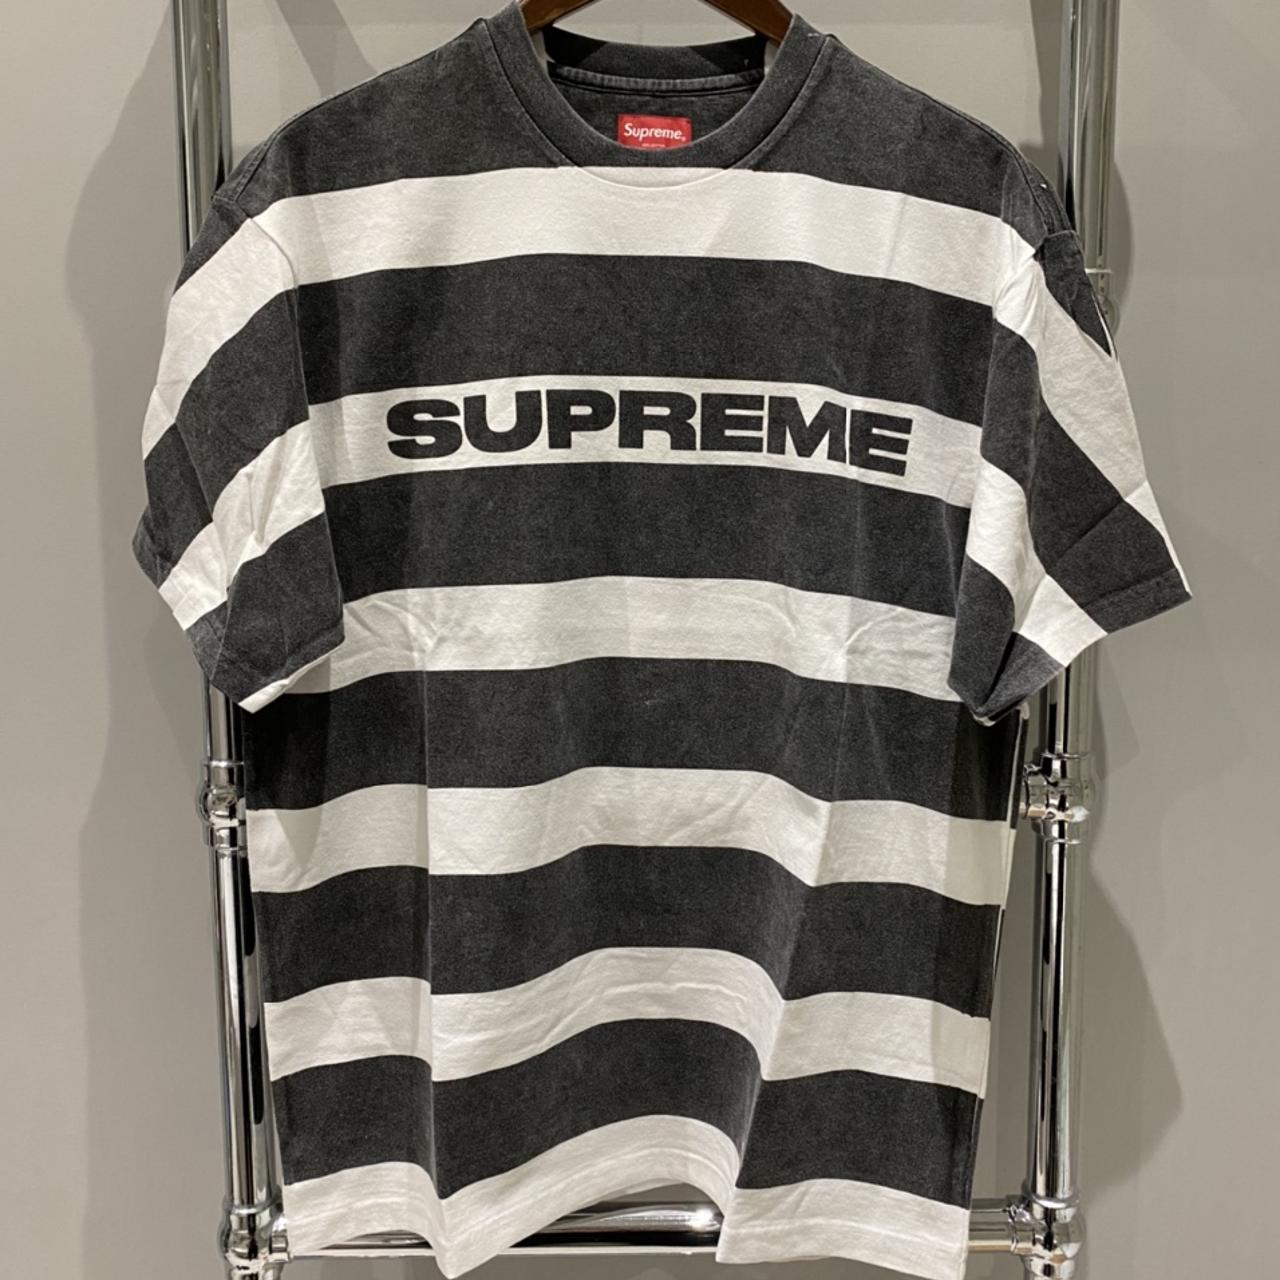 Supreme Printed Stripe S/S Top Black